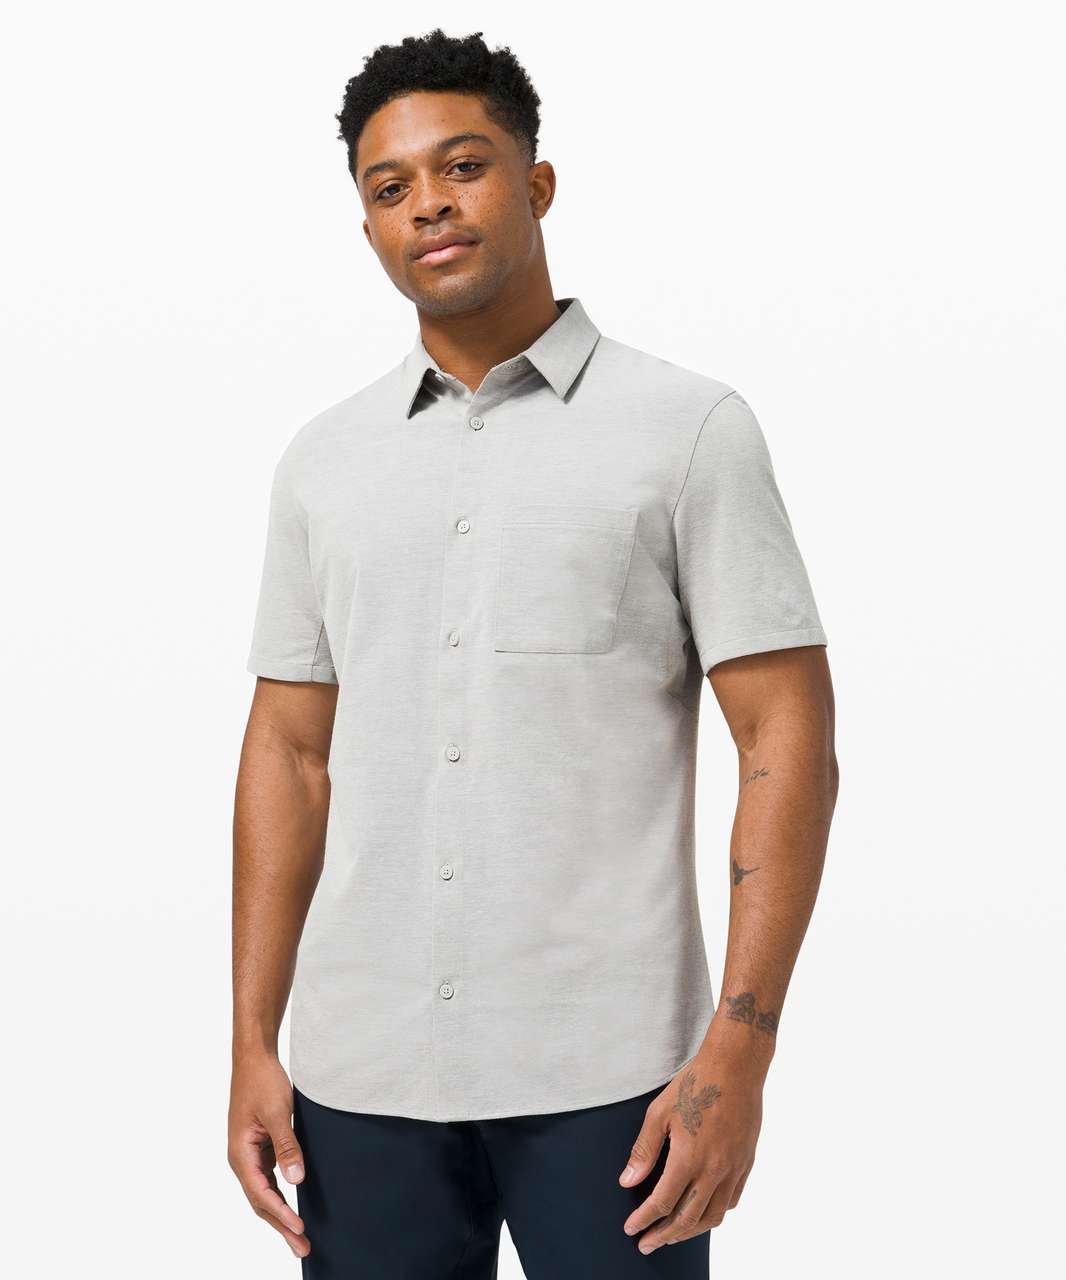 Lululemon Commission Short Sleeve Shirt - Grey Sage / White